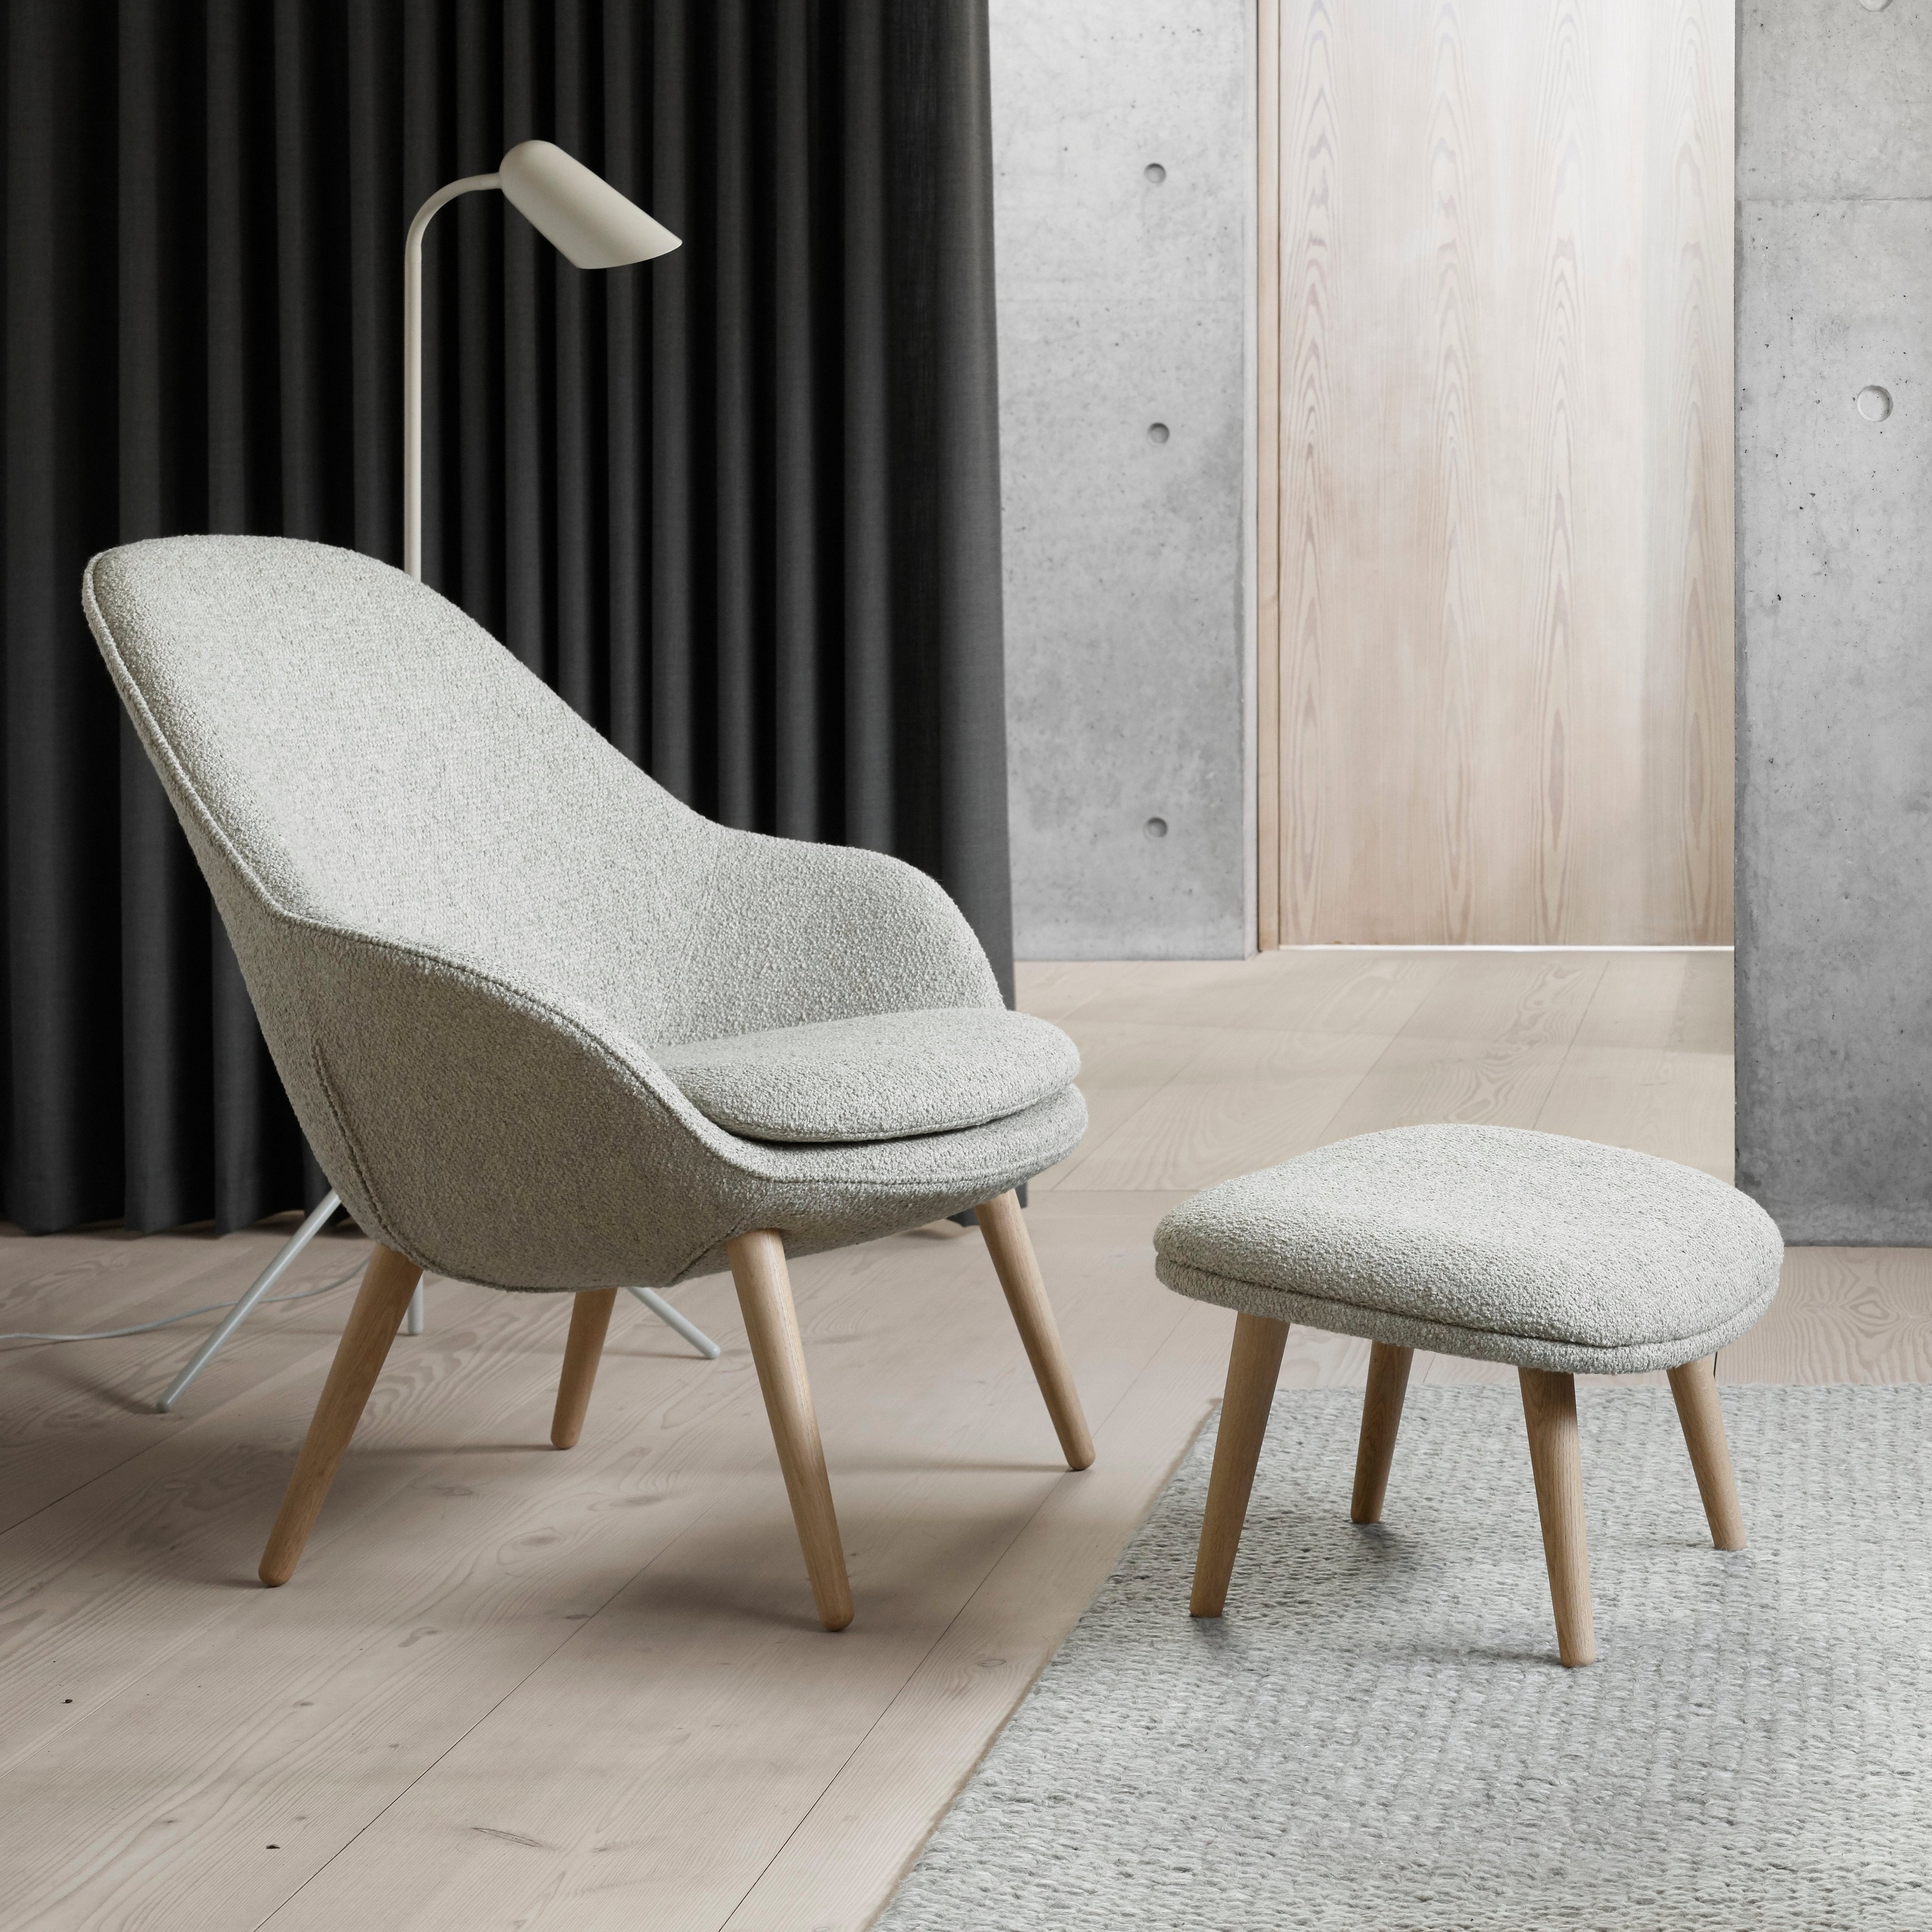 Modern stol med matchande fotpall, golvlampa, mörka gardiner och accenter i betong.